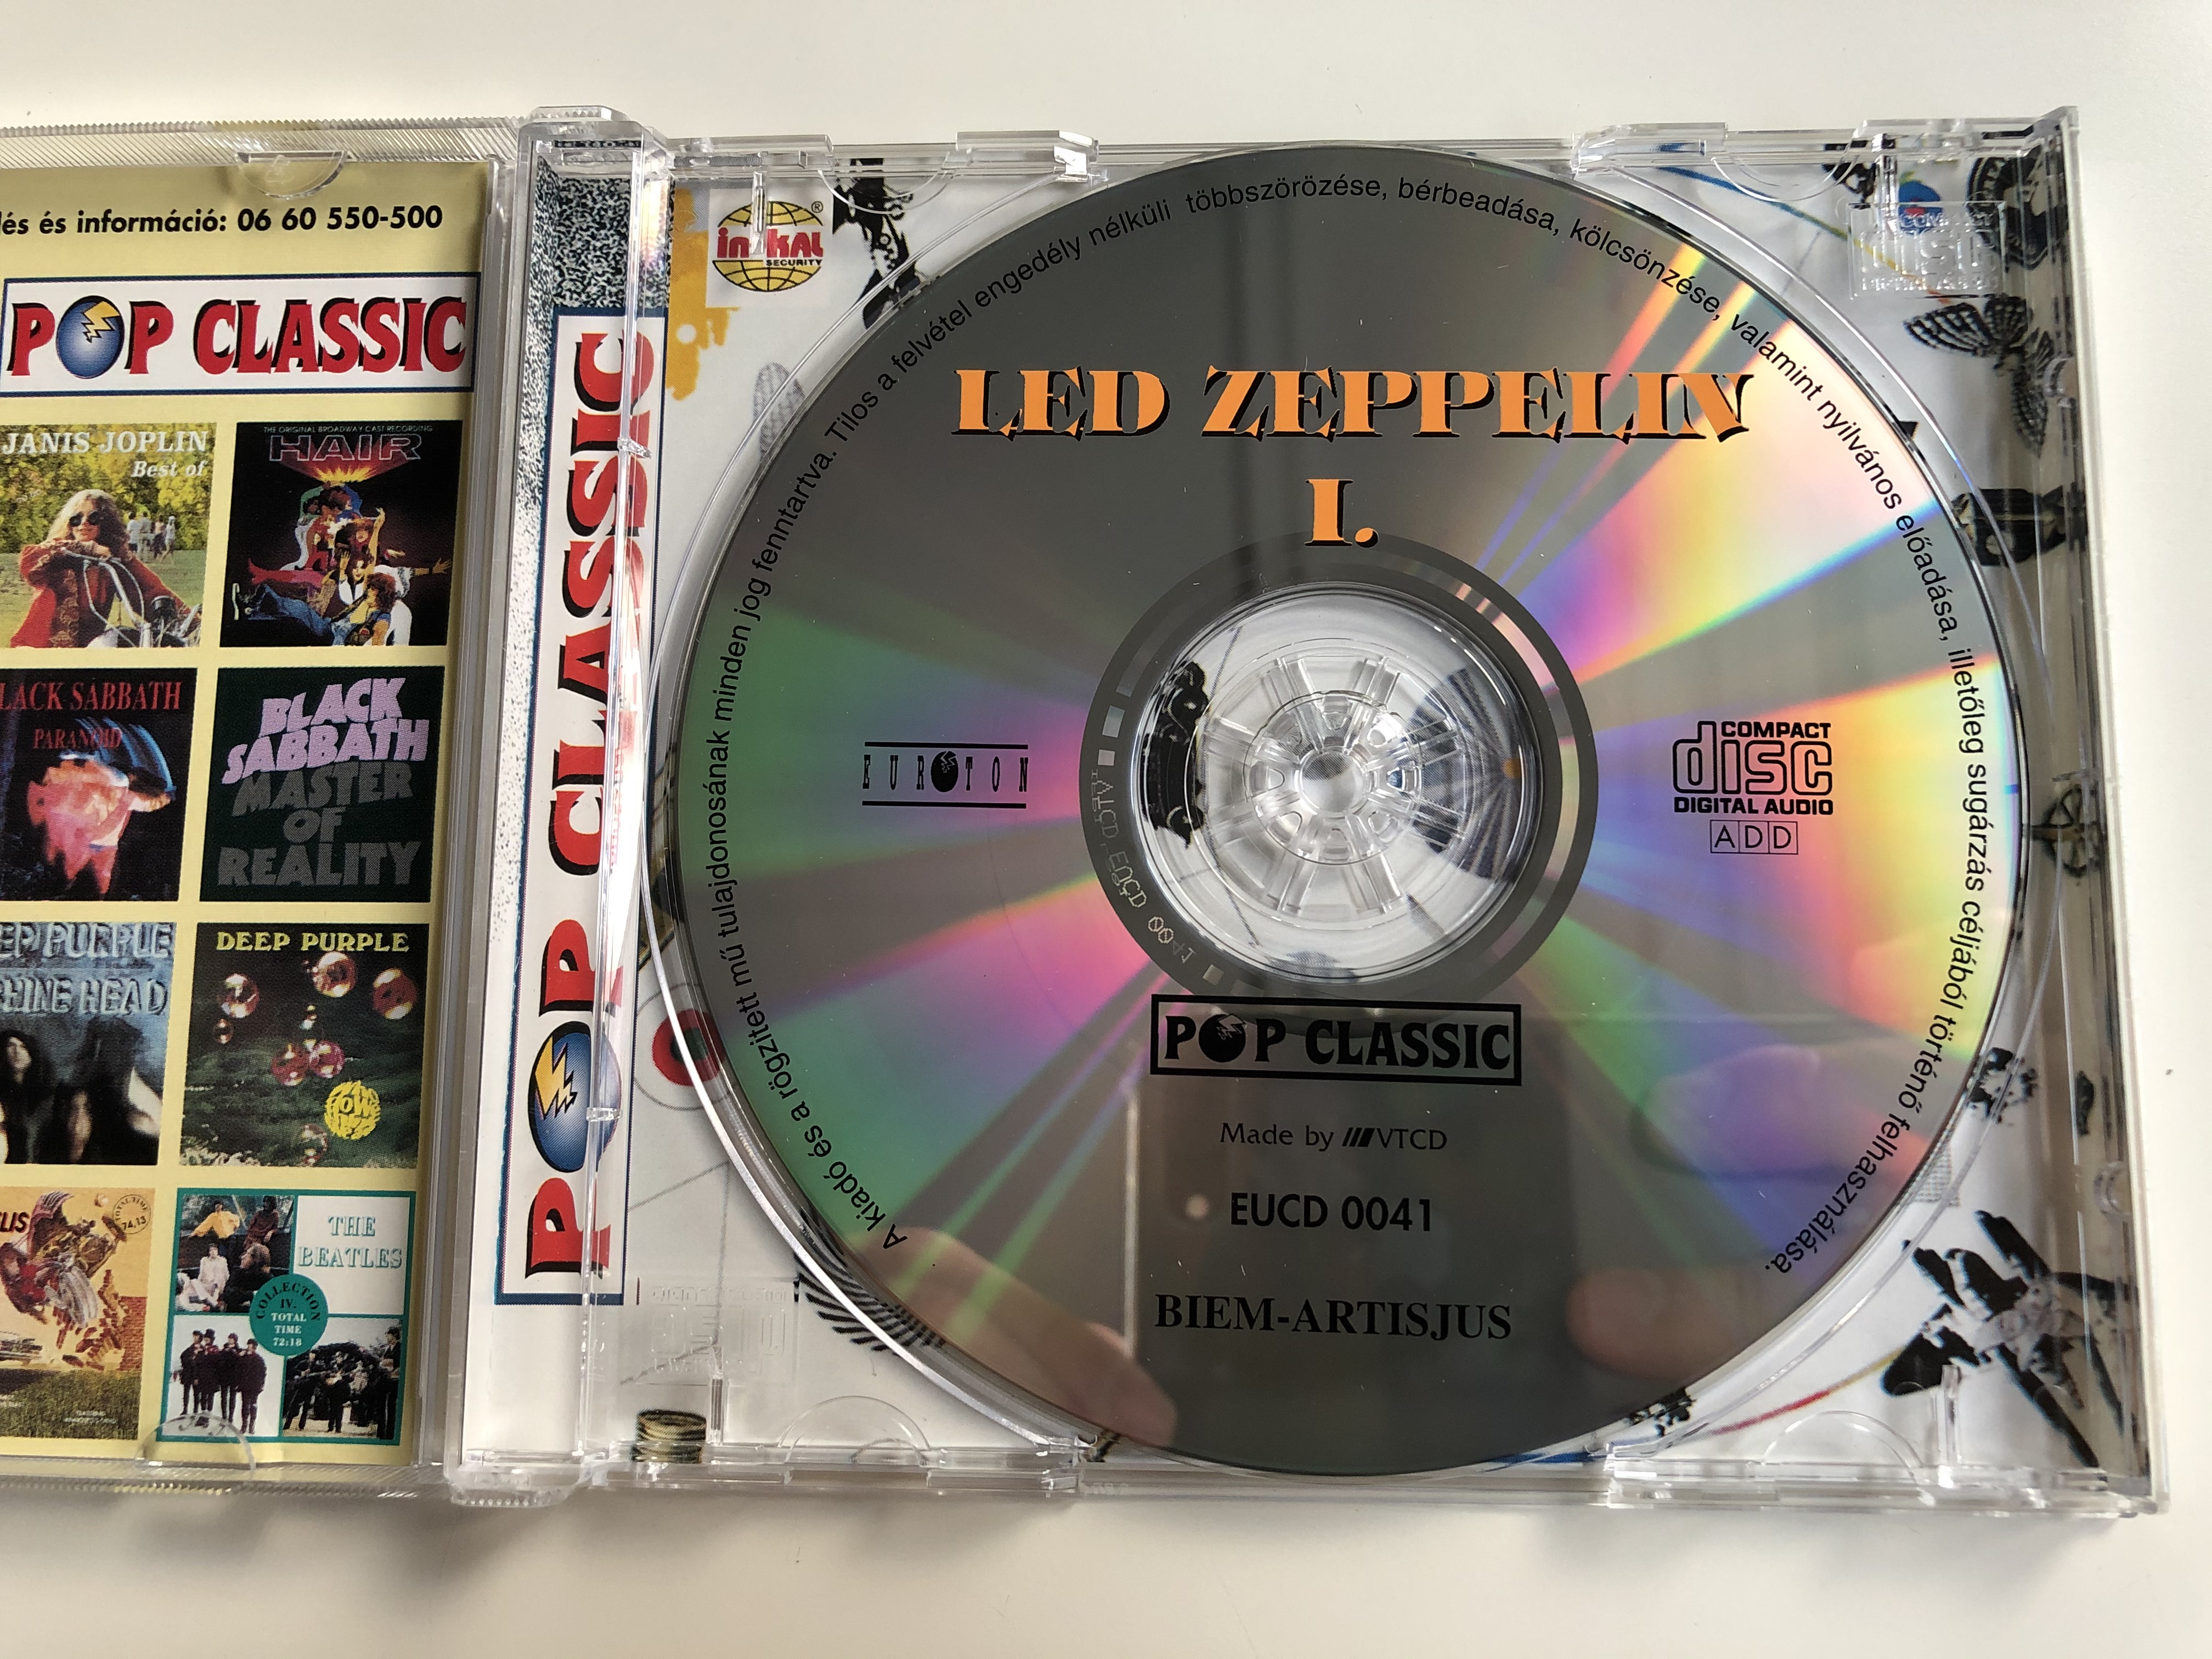 led-zeppelin-i.-pop-classic-euroton-audio-cd-eucd-0041-2-.jpg